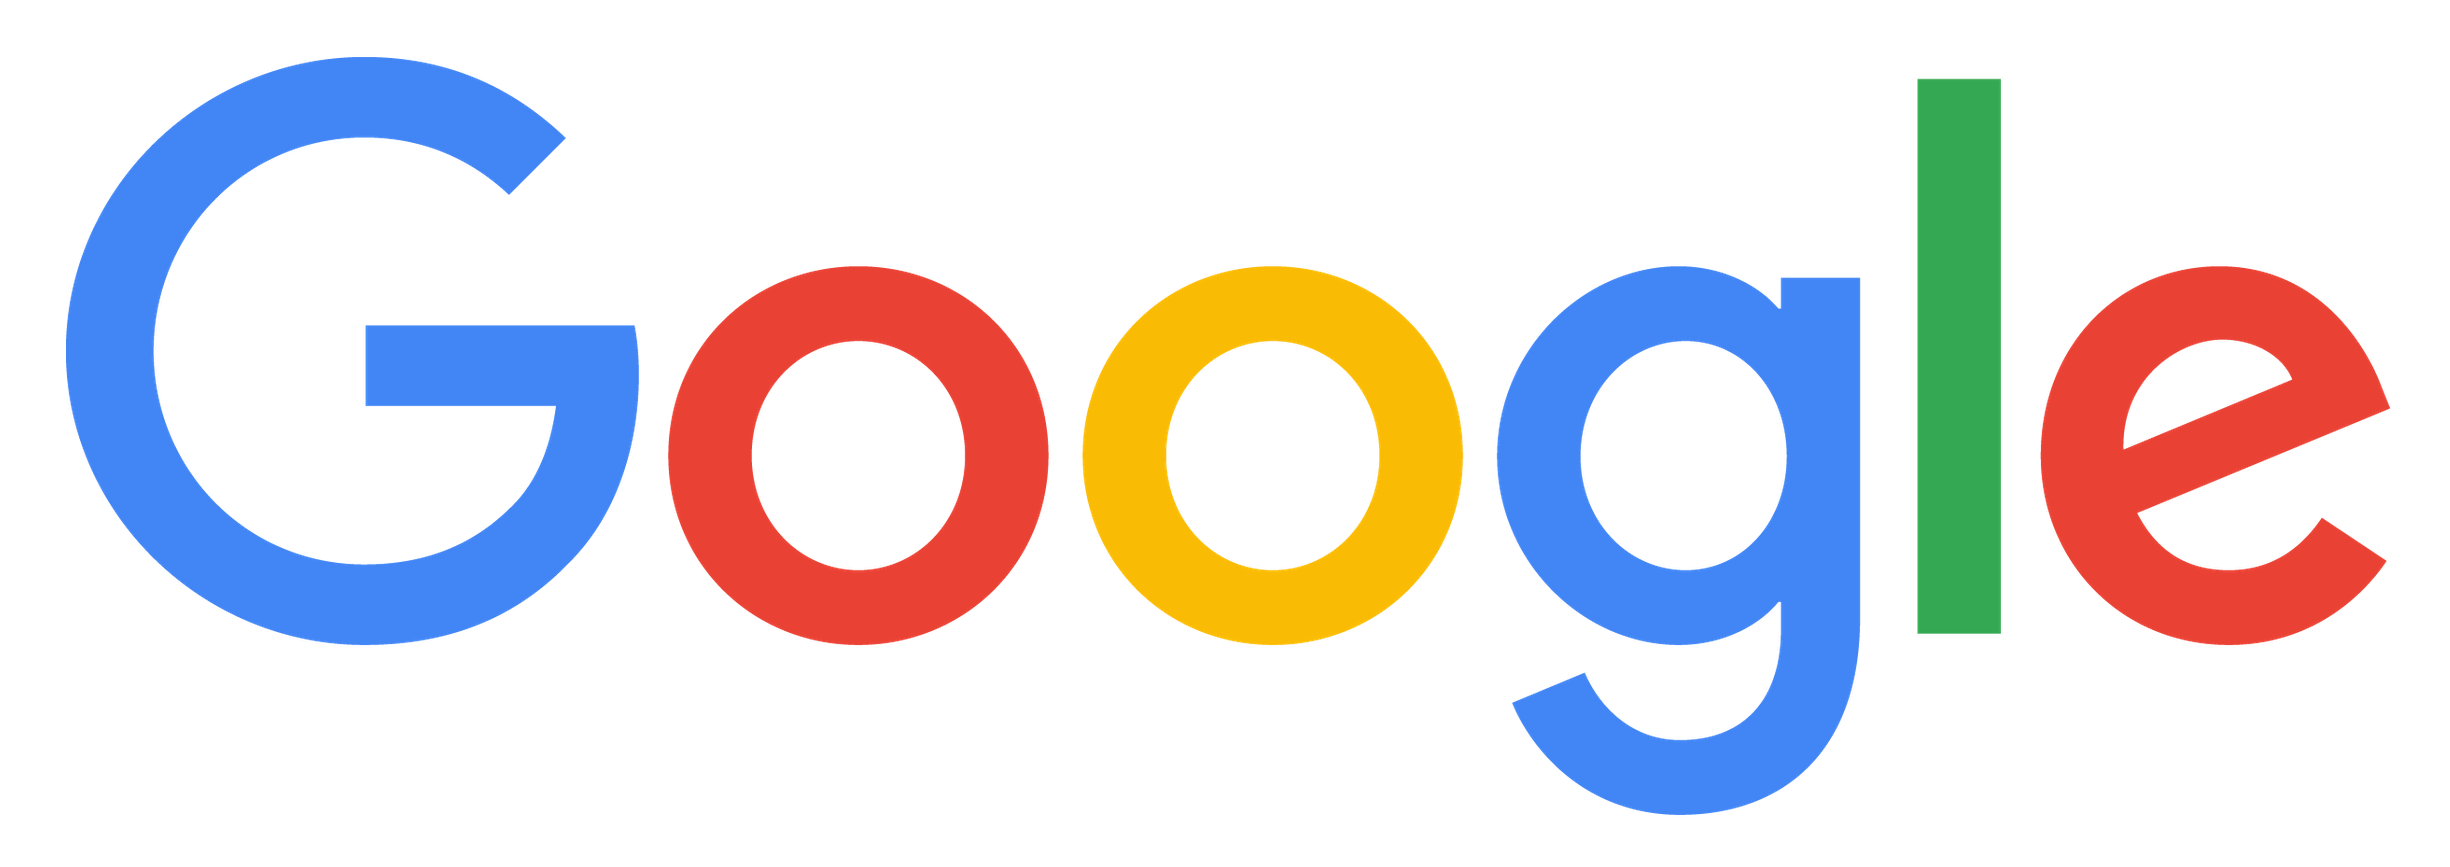 logo_Google_FullColor_Resized.png